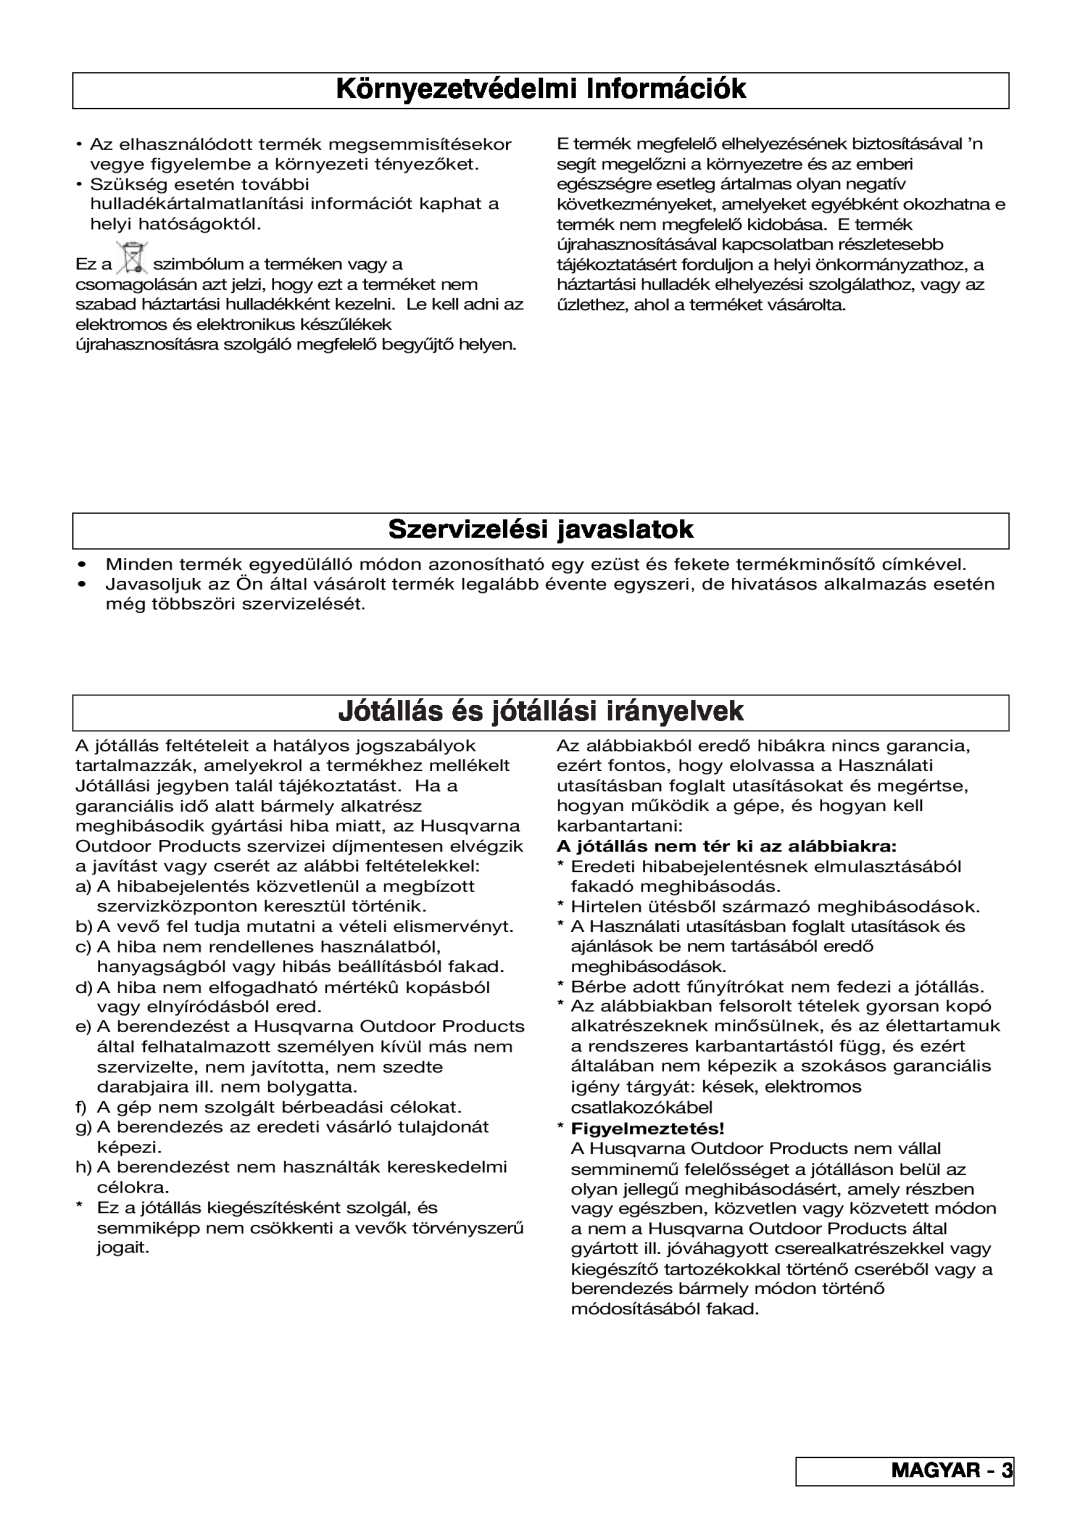 Flymo VM032 manual Környezetvédelmi Információk, Jótállás és jótállási irányelvek, Szervizelési javaslatok, Magyar 